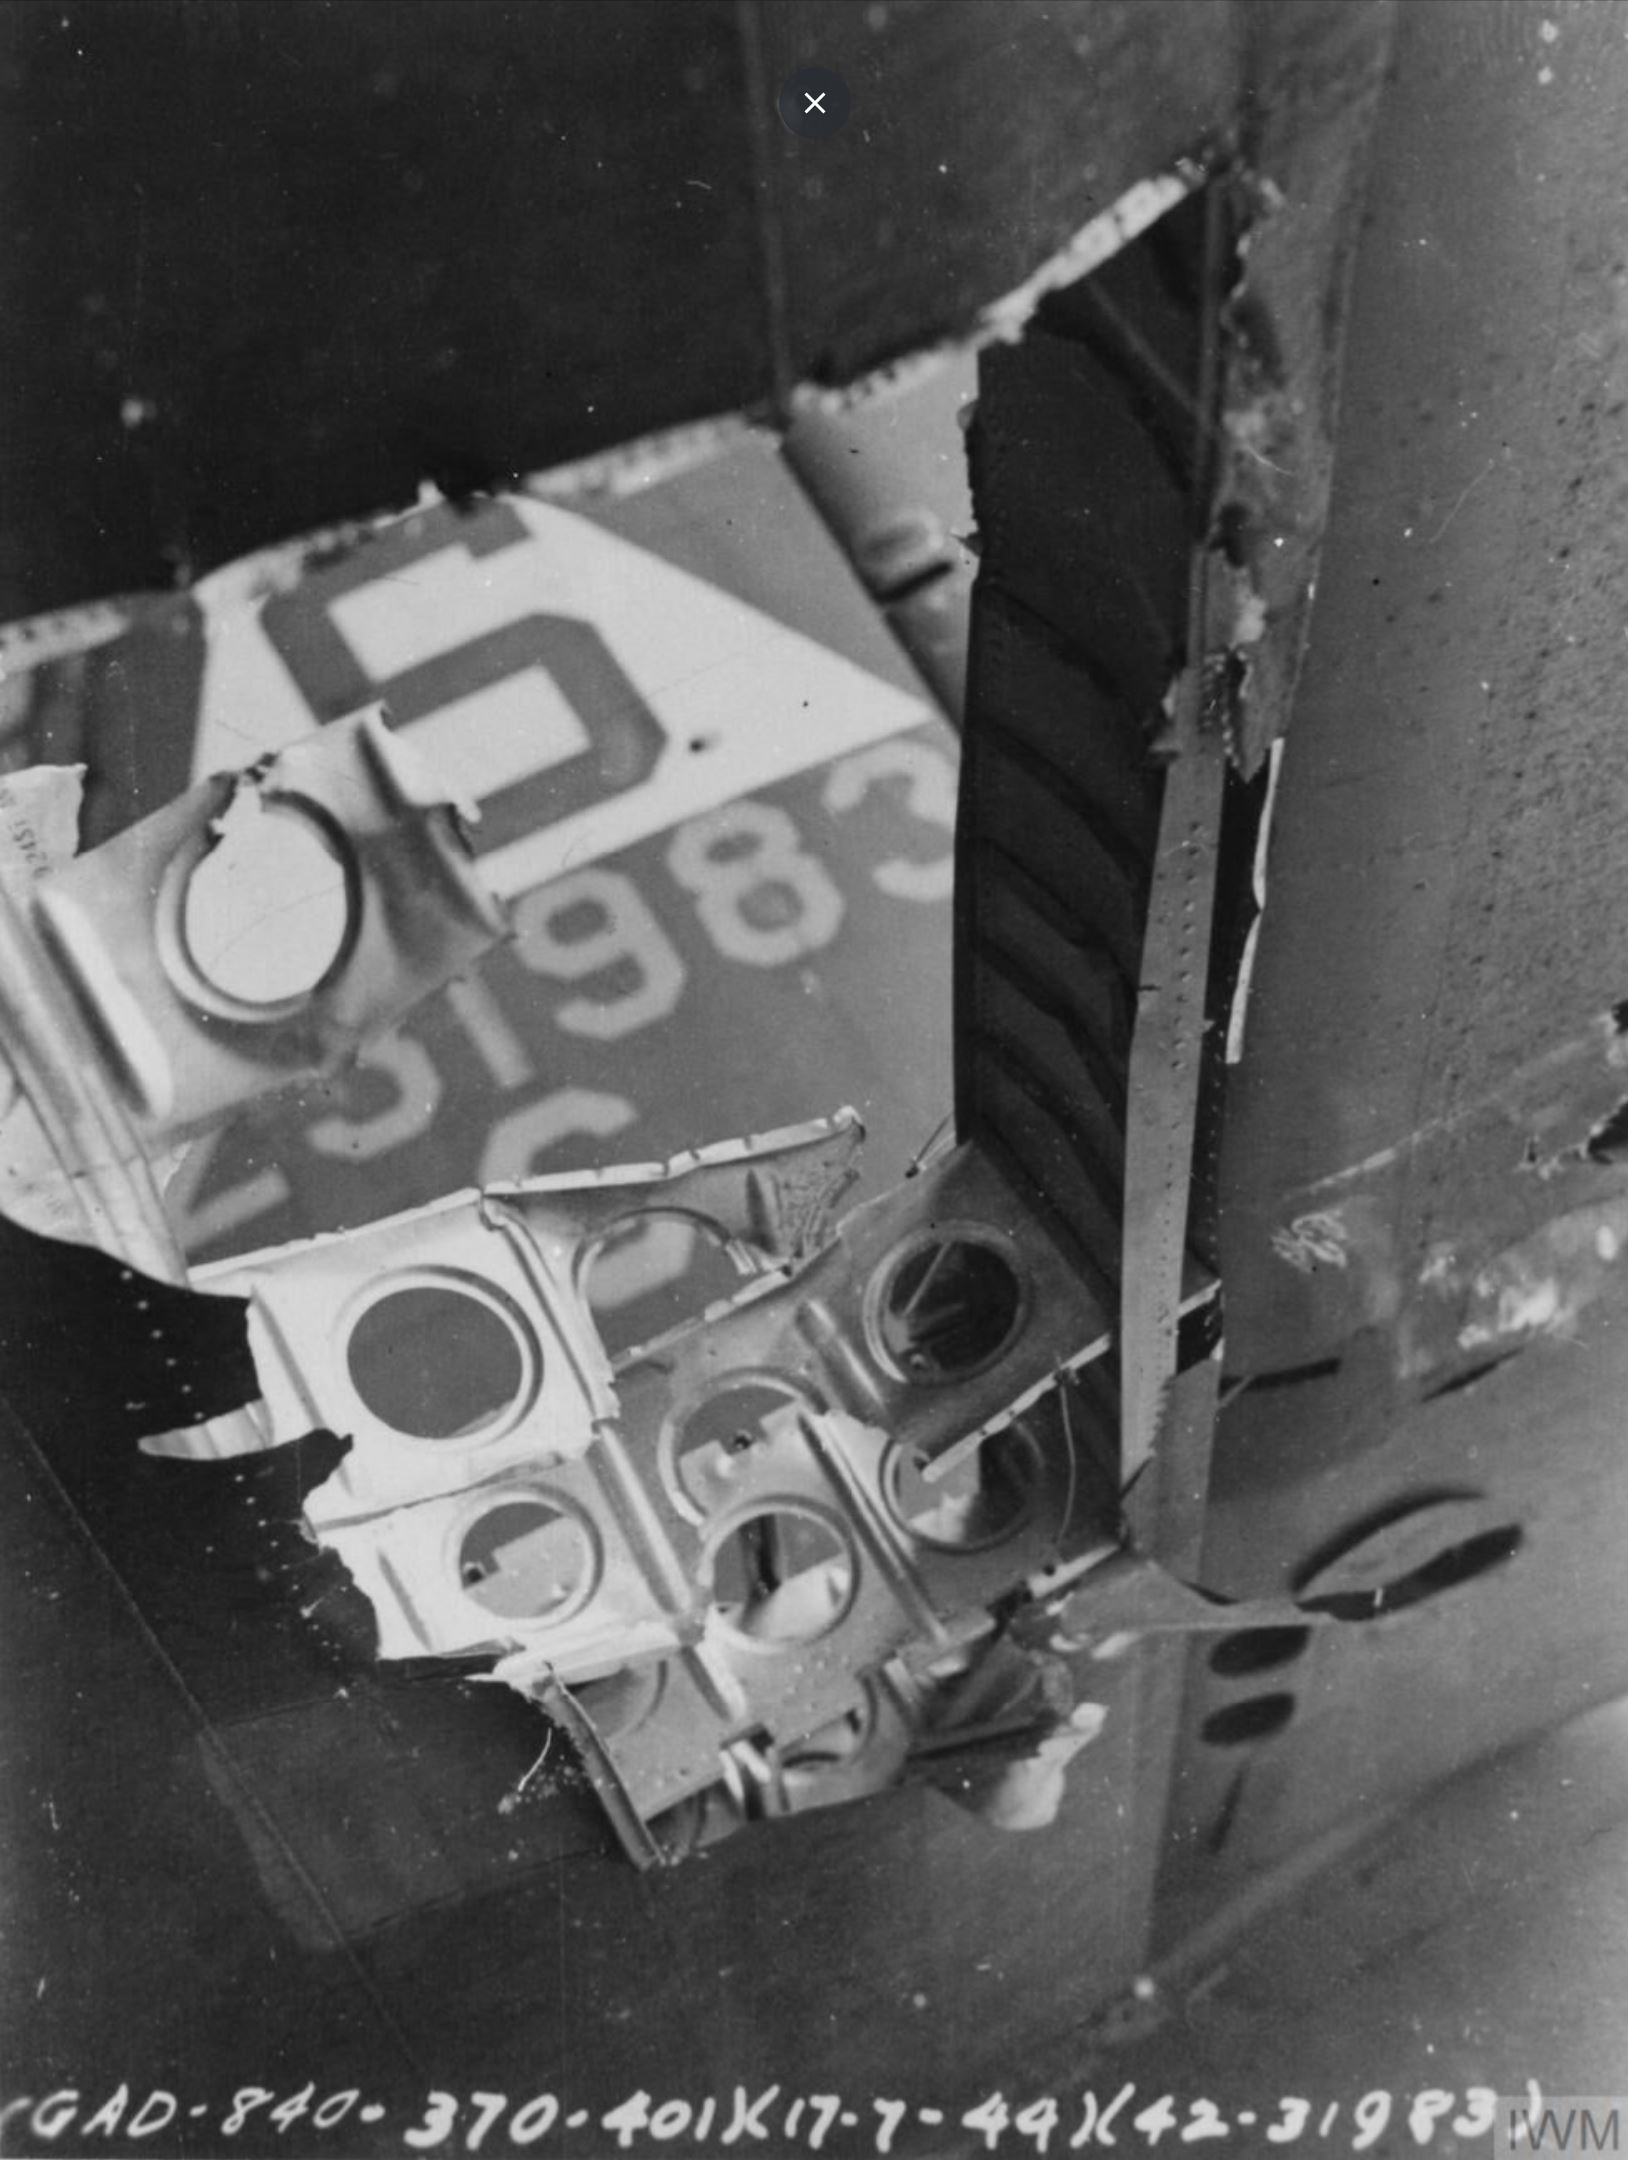 42 31983 B 17G Fortress 8AF 401BG615BS IYG Mary Alice flak damaged 17th Jul 1944 FRE8090